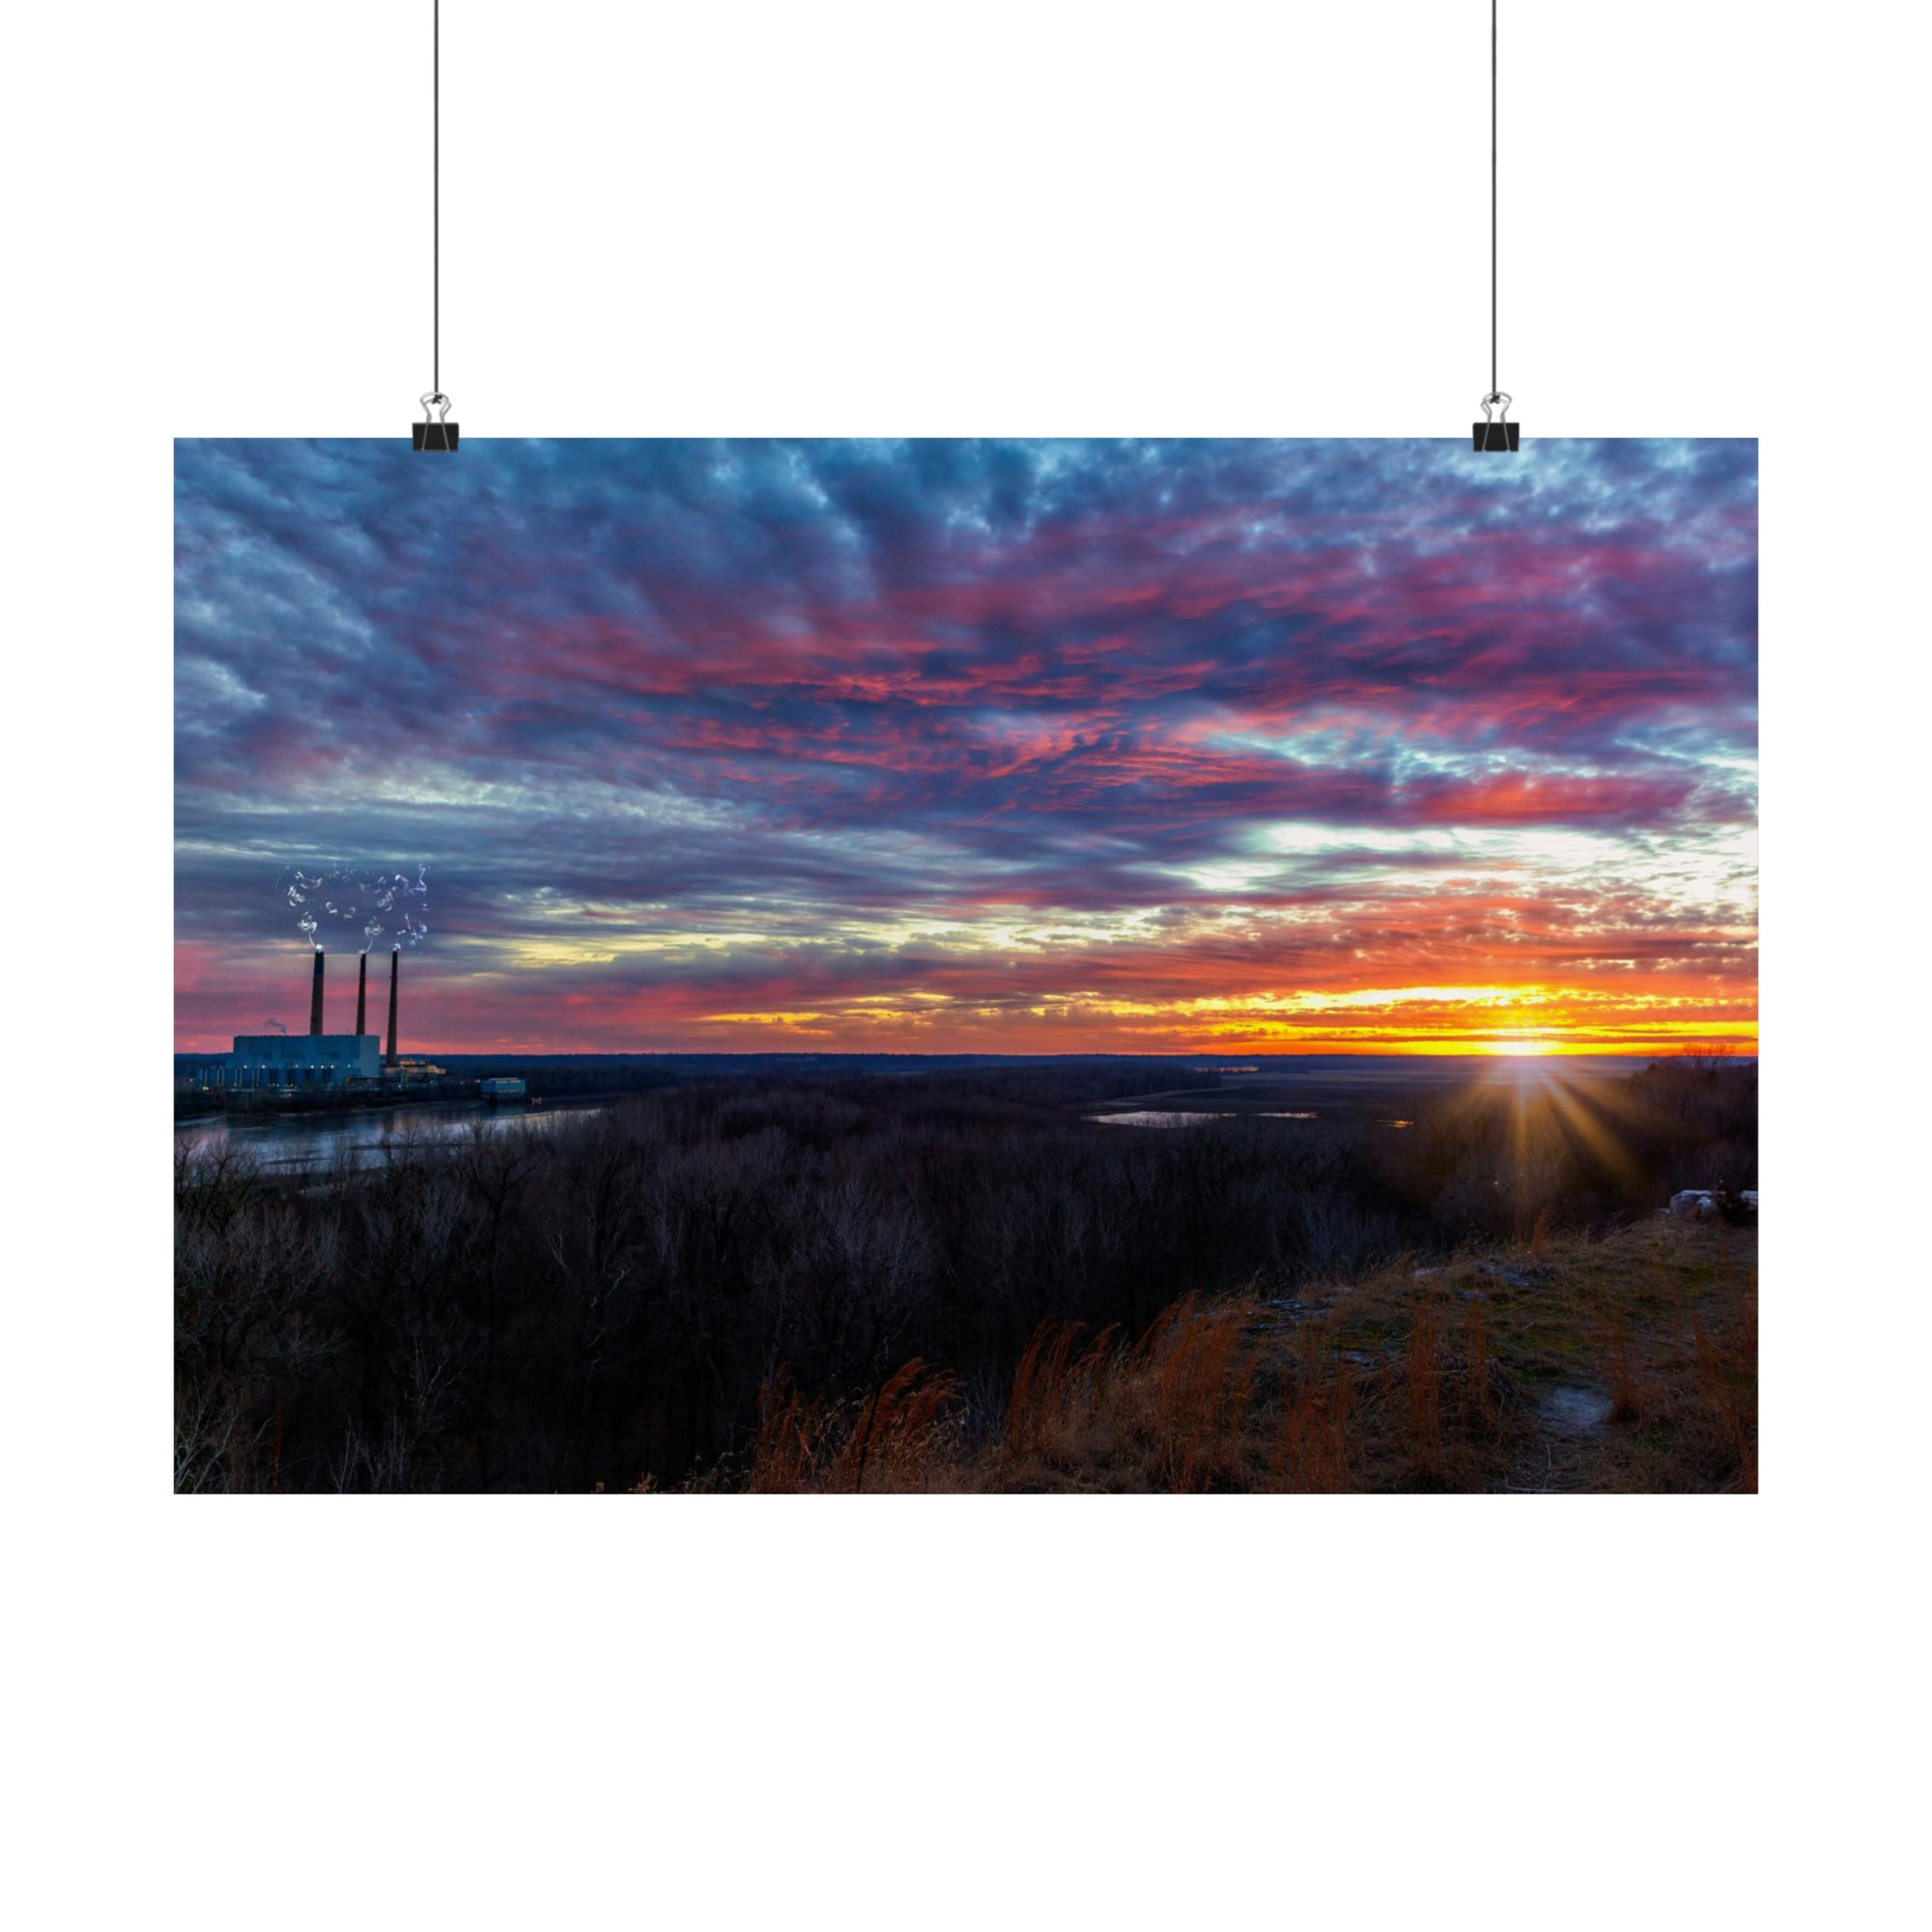 Sunset Overlook at Klondike 1-13-21 Poster